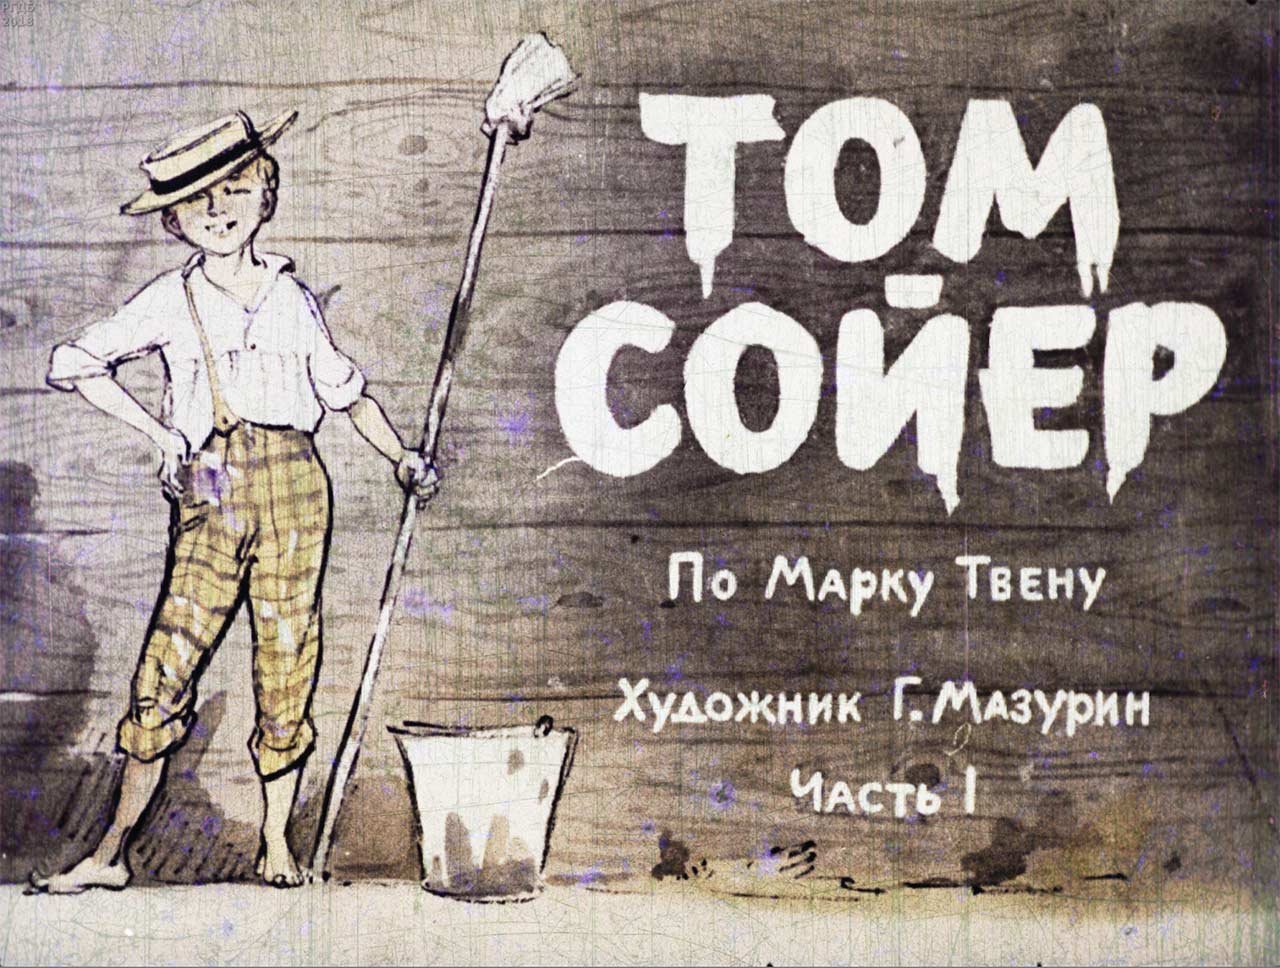 Рисунок к рассказу тома сойера. Диафильм приключения Тома Сойера. Том Сойер великолепный маляр. Том Сойер иллюстрации к книге.